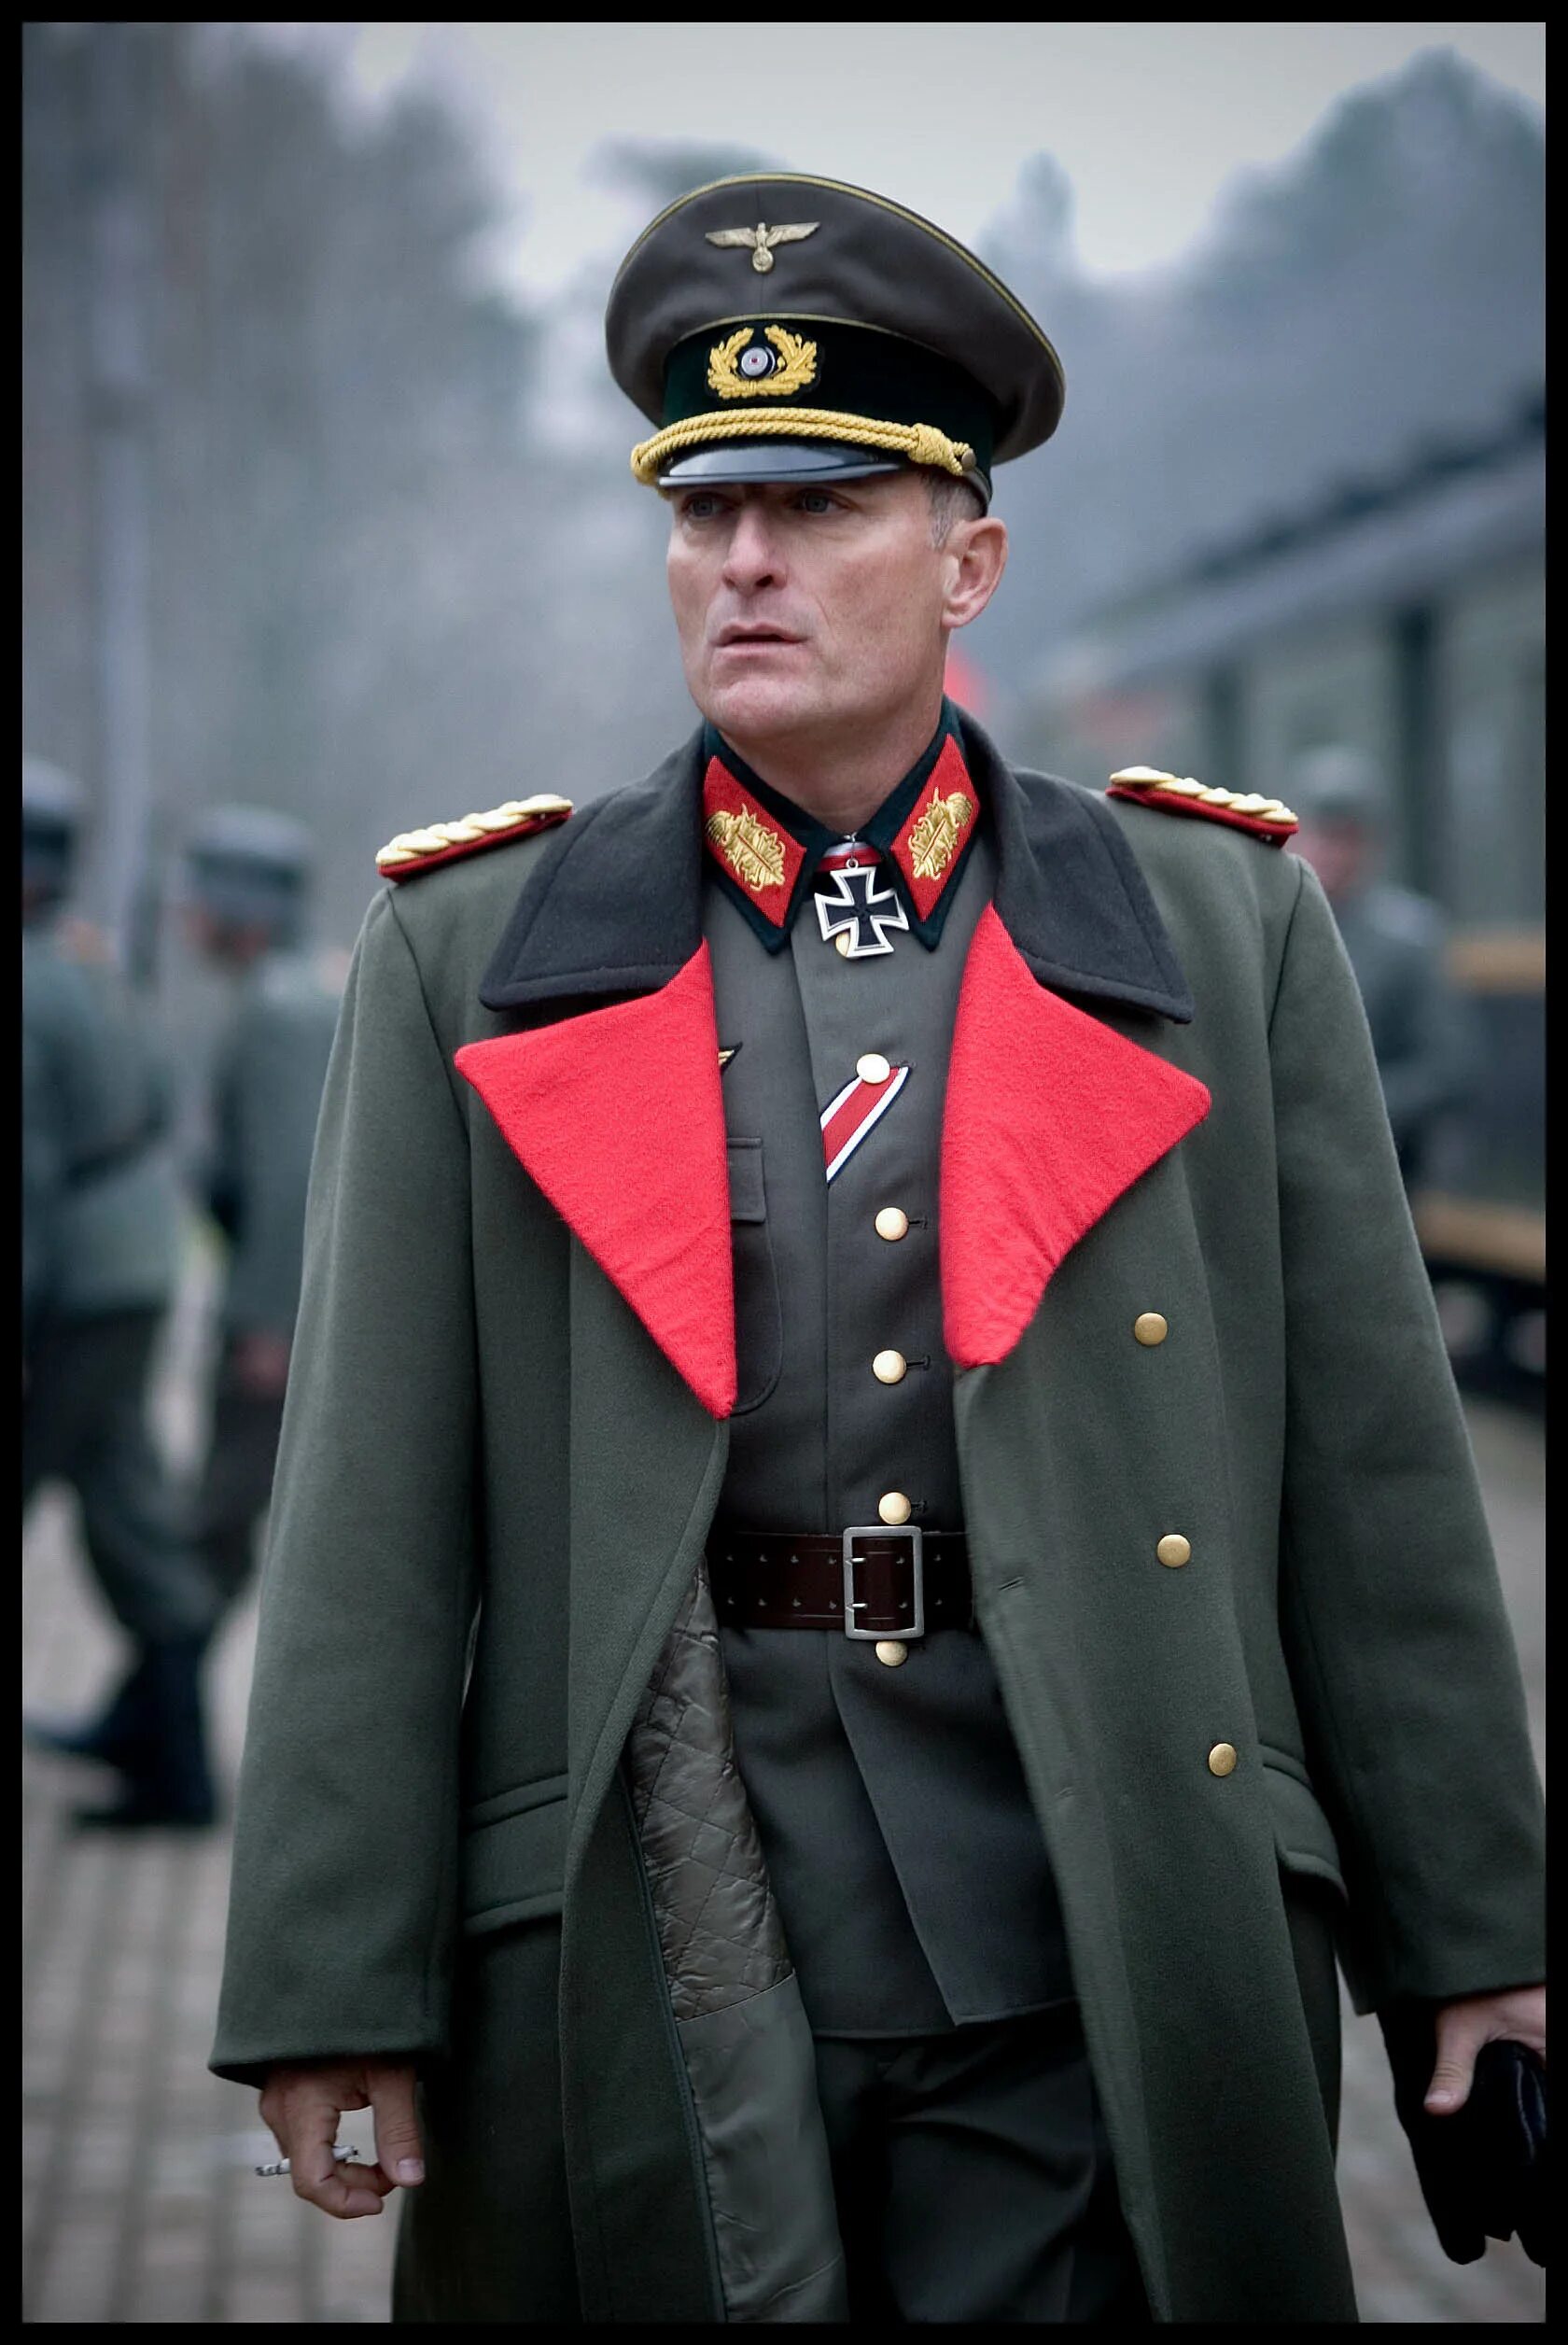 Сер сс. Форма Генерала Германии второй мировой. Генерал фельдмаршал вермахта униформа. Форма Генерала Германии второй мировой парадная. Генерал фельдмаршал СС.